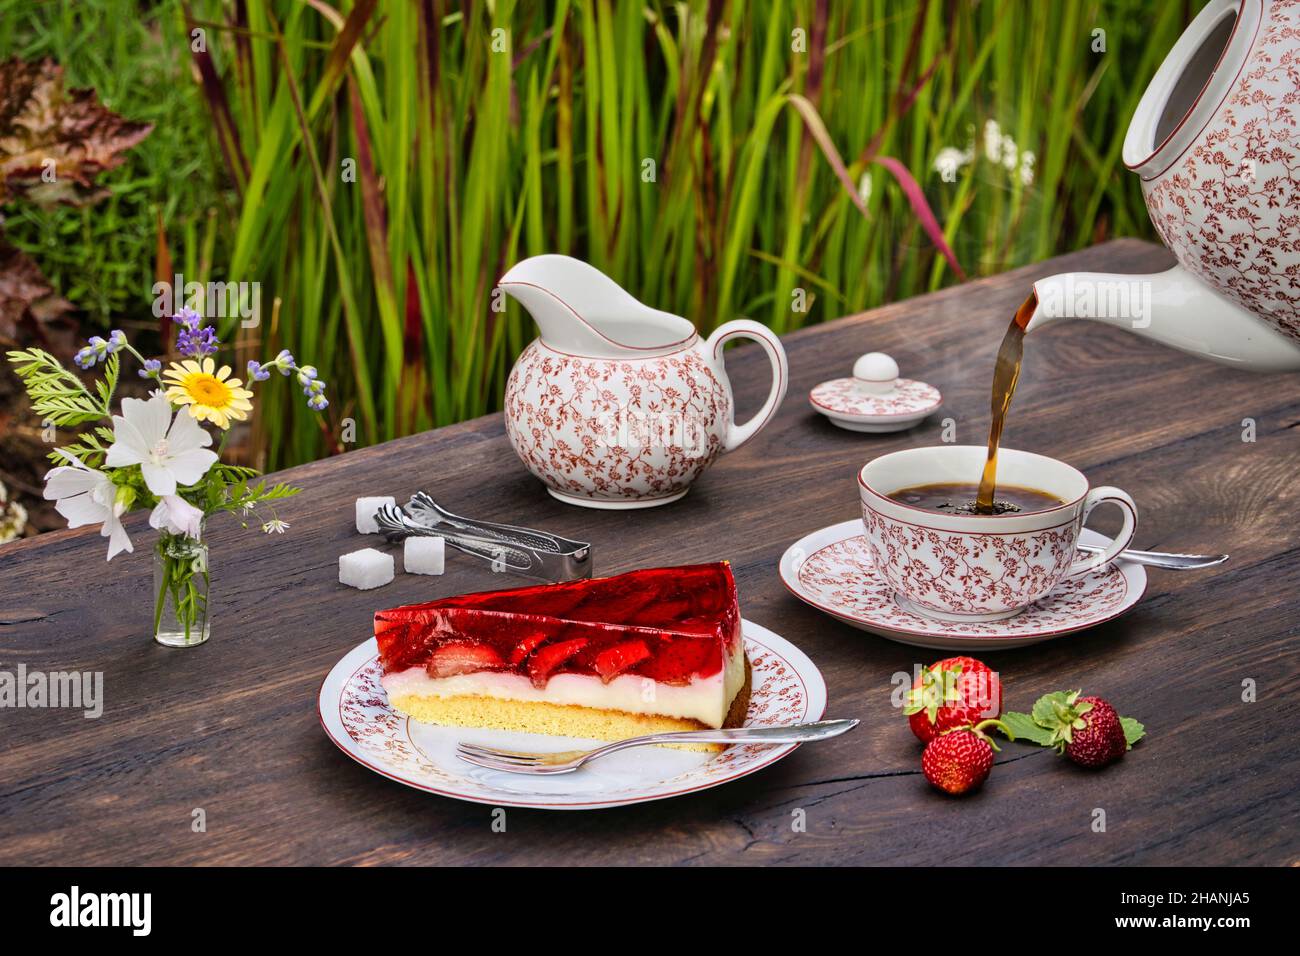 Gedeckter Kaffeetisch aus Holz im Freien mit Erdbeerkuchen, Erdbeeren und heißem Kaffee der aus einer Kaffeekanne in eine Tasse gegossen wird. Stock Photo